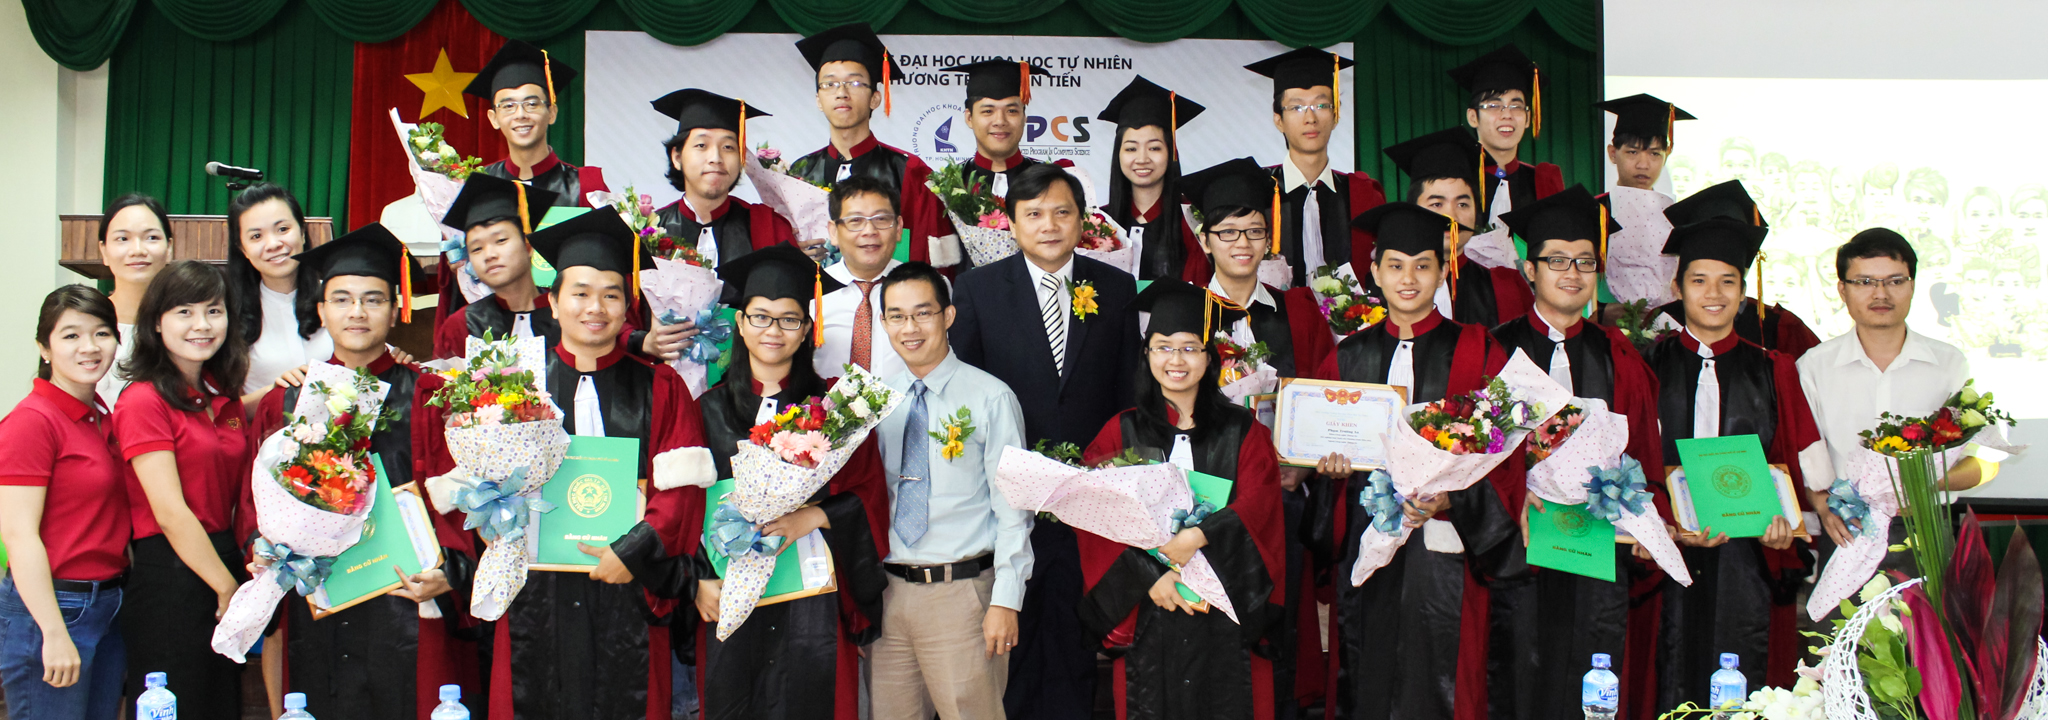 Lễ tốt nghiệp chương trình đào tạo tiên tiến ngành Công nghệ thông tin của Trường Đại học Khoa học tự nhiên, ĐH Quốc gia TP Hồ Chí Minh, tháng 11/2013. Nguồn: ctdb.hcmus.edu.vn